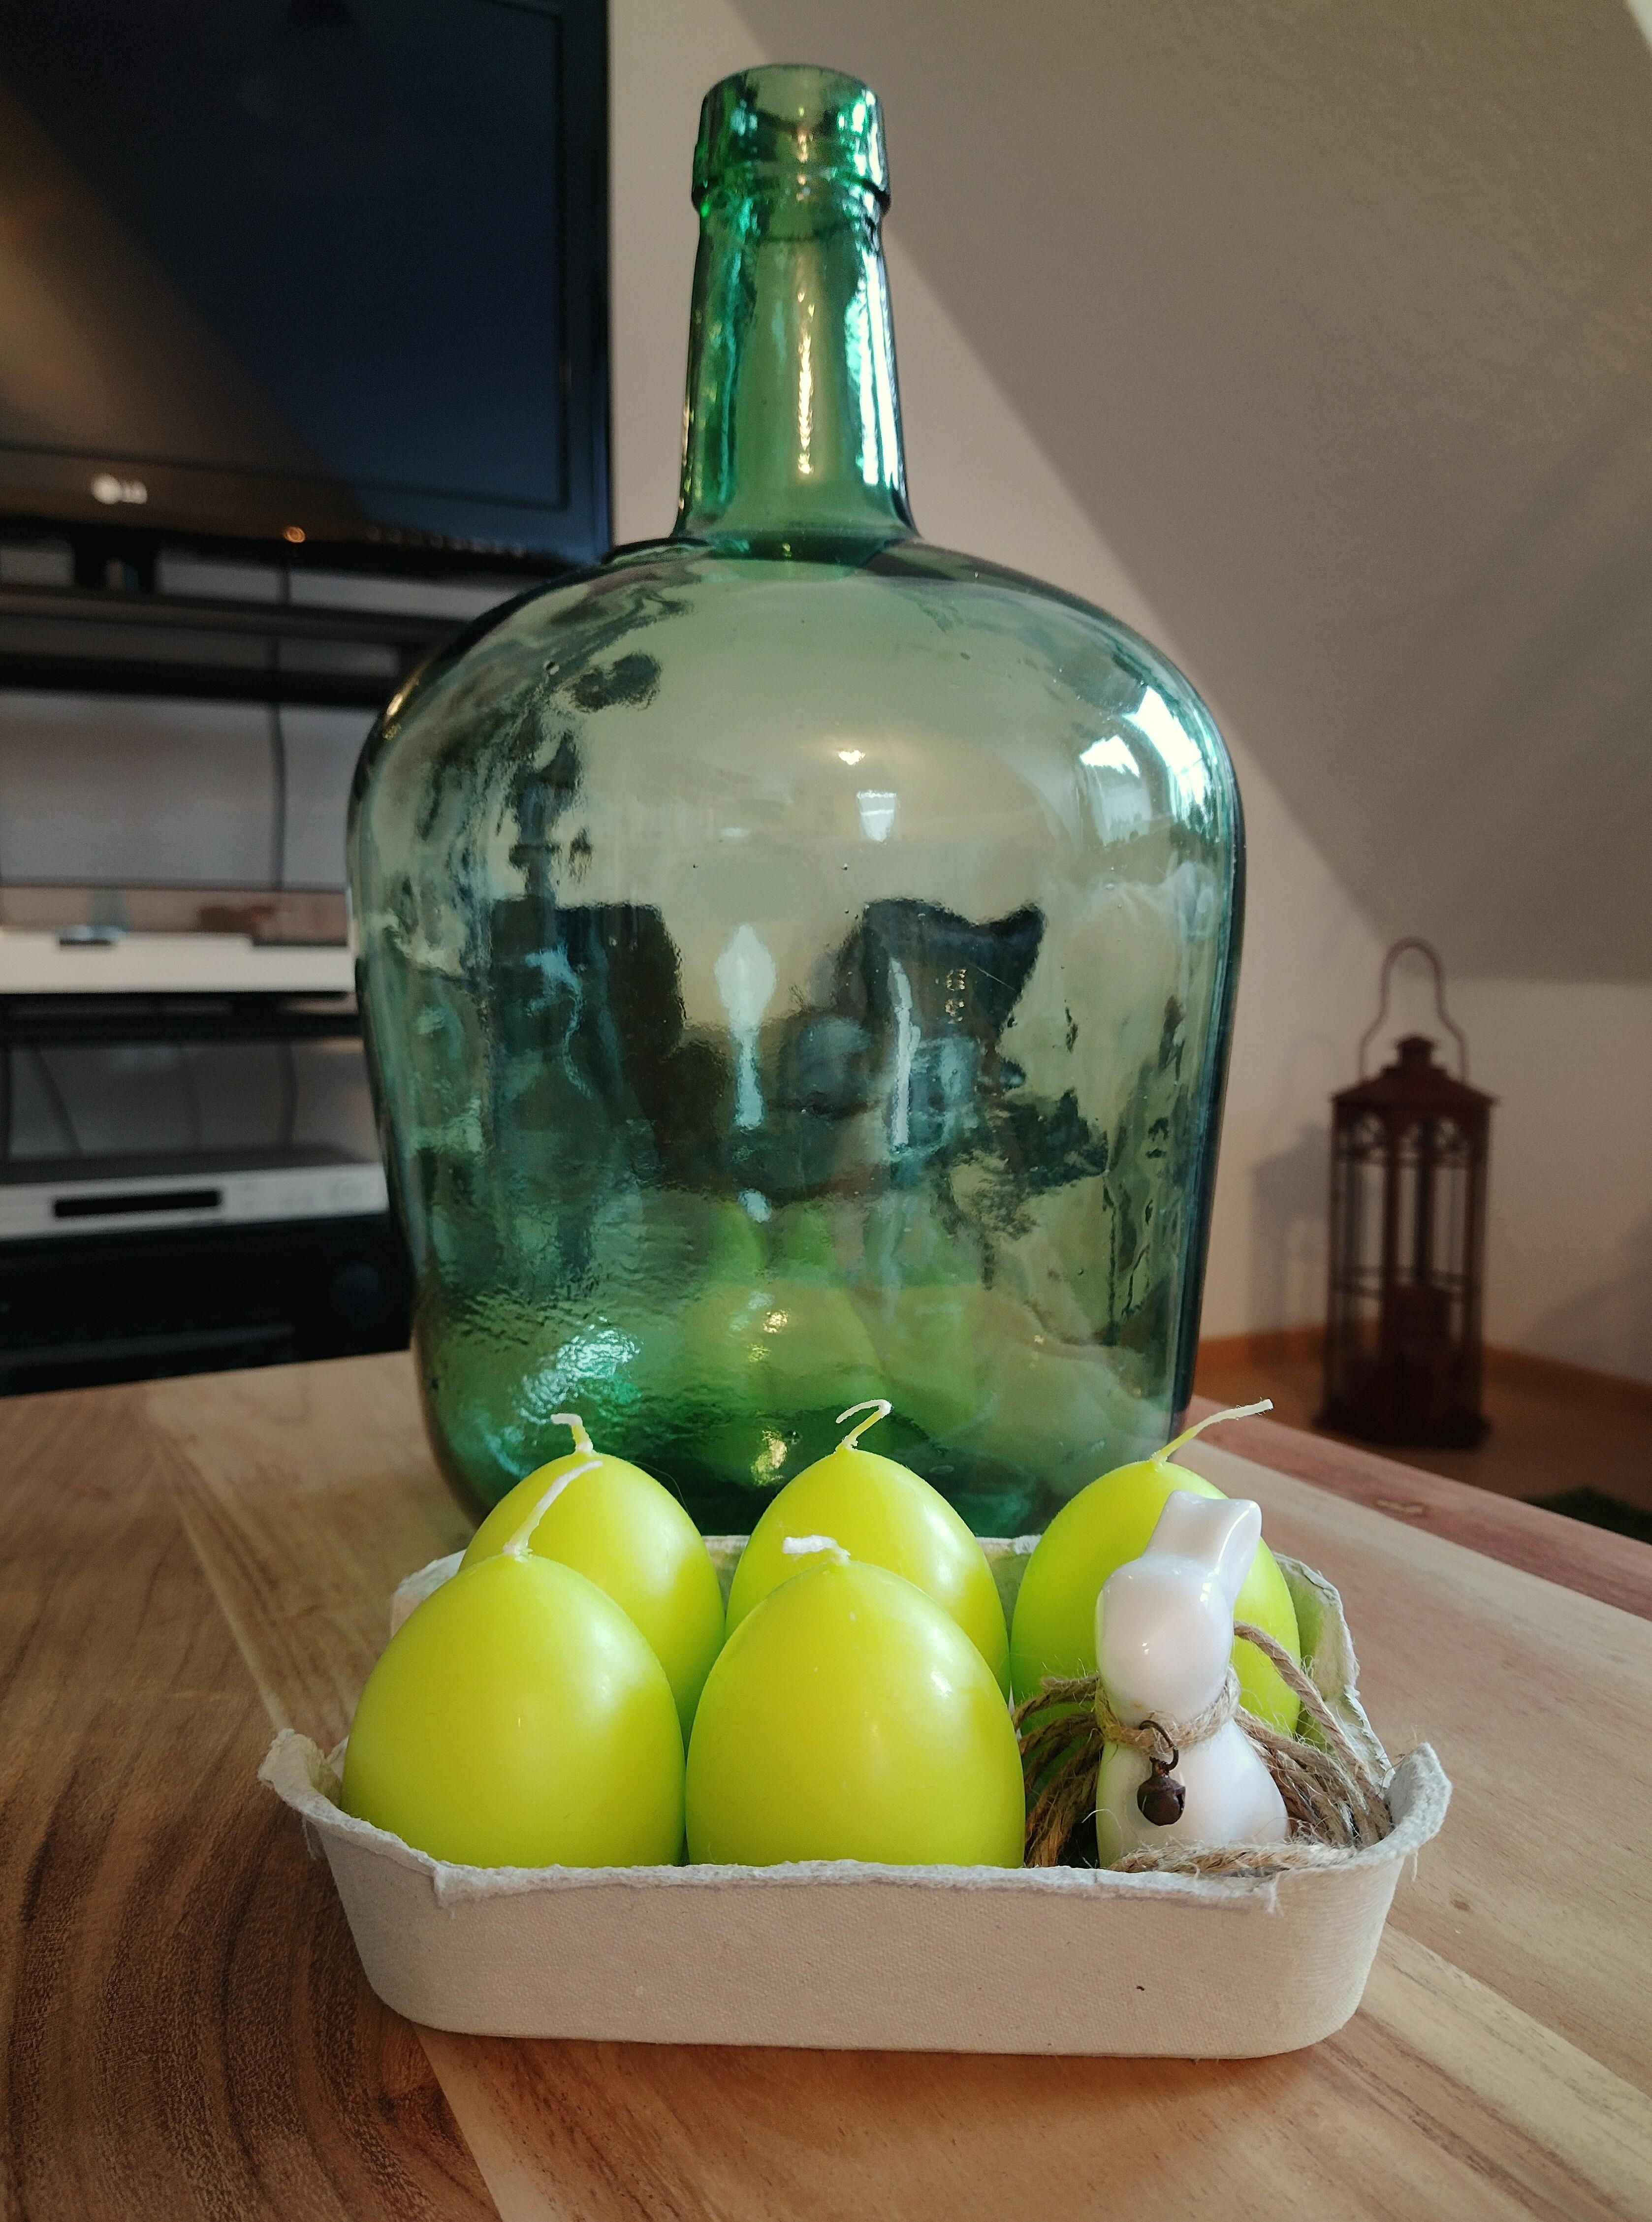 #ostern #deko #couchtisch #glas #vase #kerzen #keramikhase #eierkerzen 